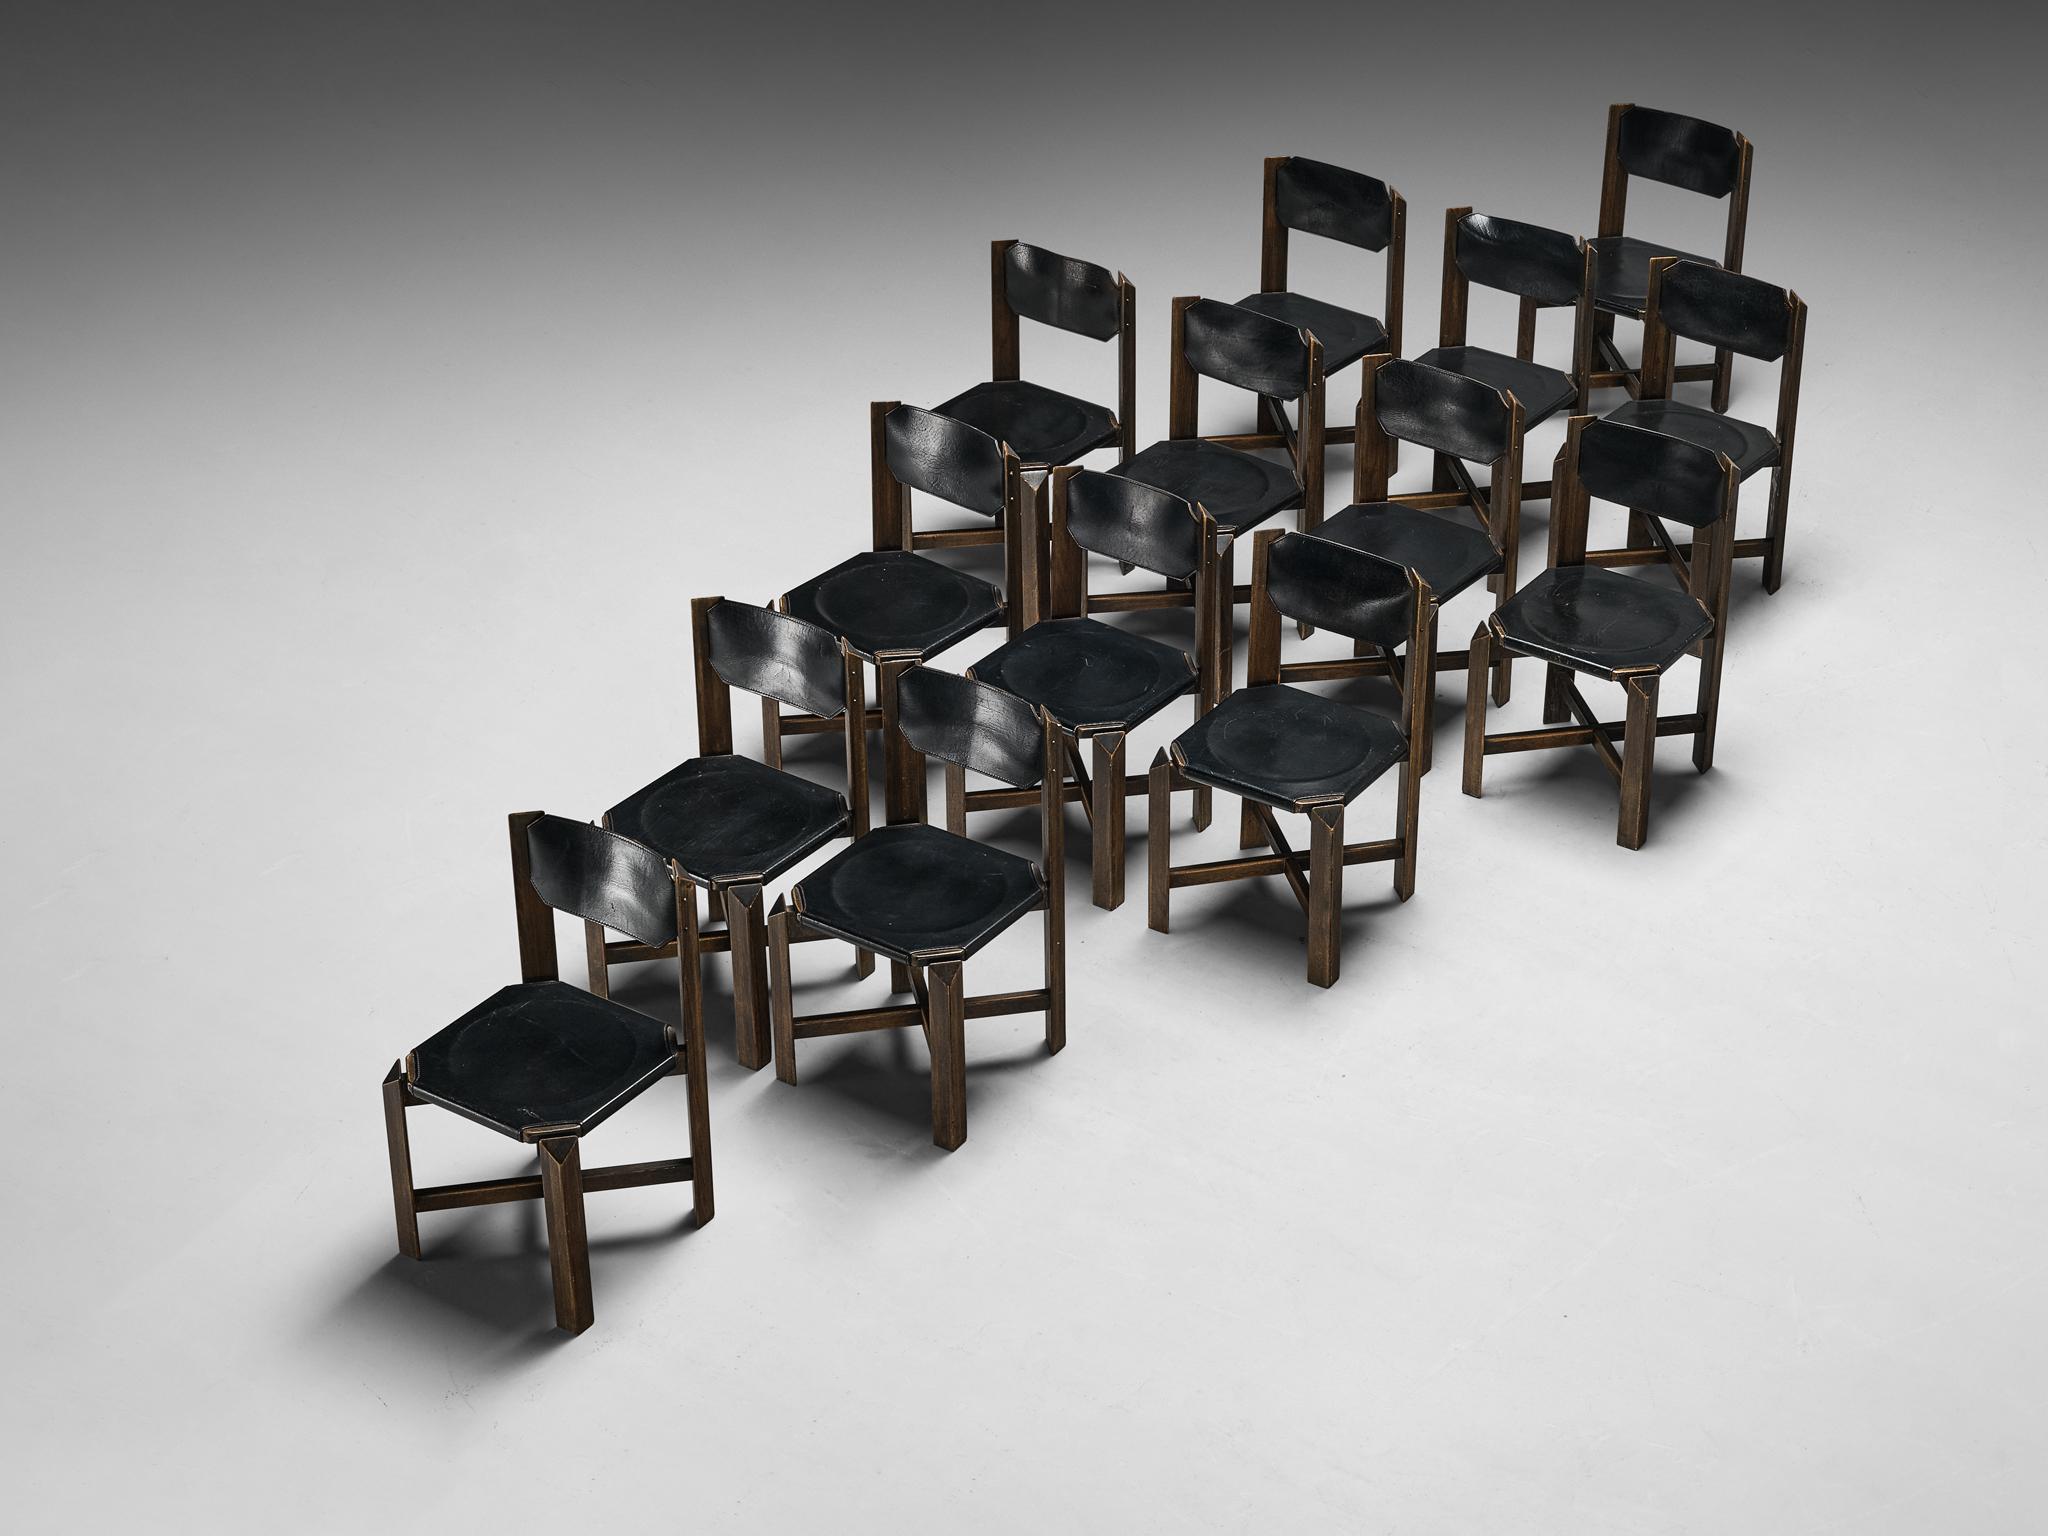 Ensemble de quatorze chaises de salle à manger, cuir, hêtre, Europe, années 1970

Ces chaises de salle à manger sont de construction robuste, avec un revêtement en cuir noir durable complété par un cadre en bois robuste. La conception architecturale